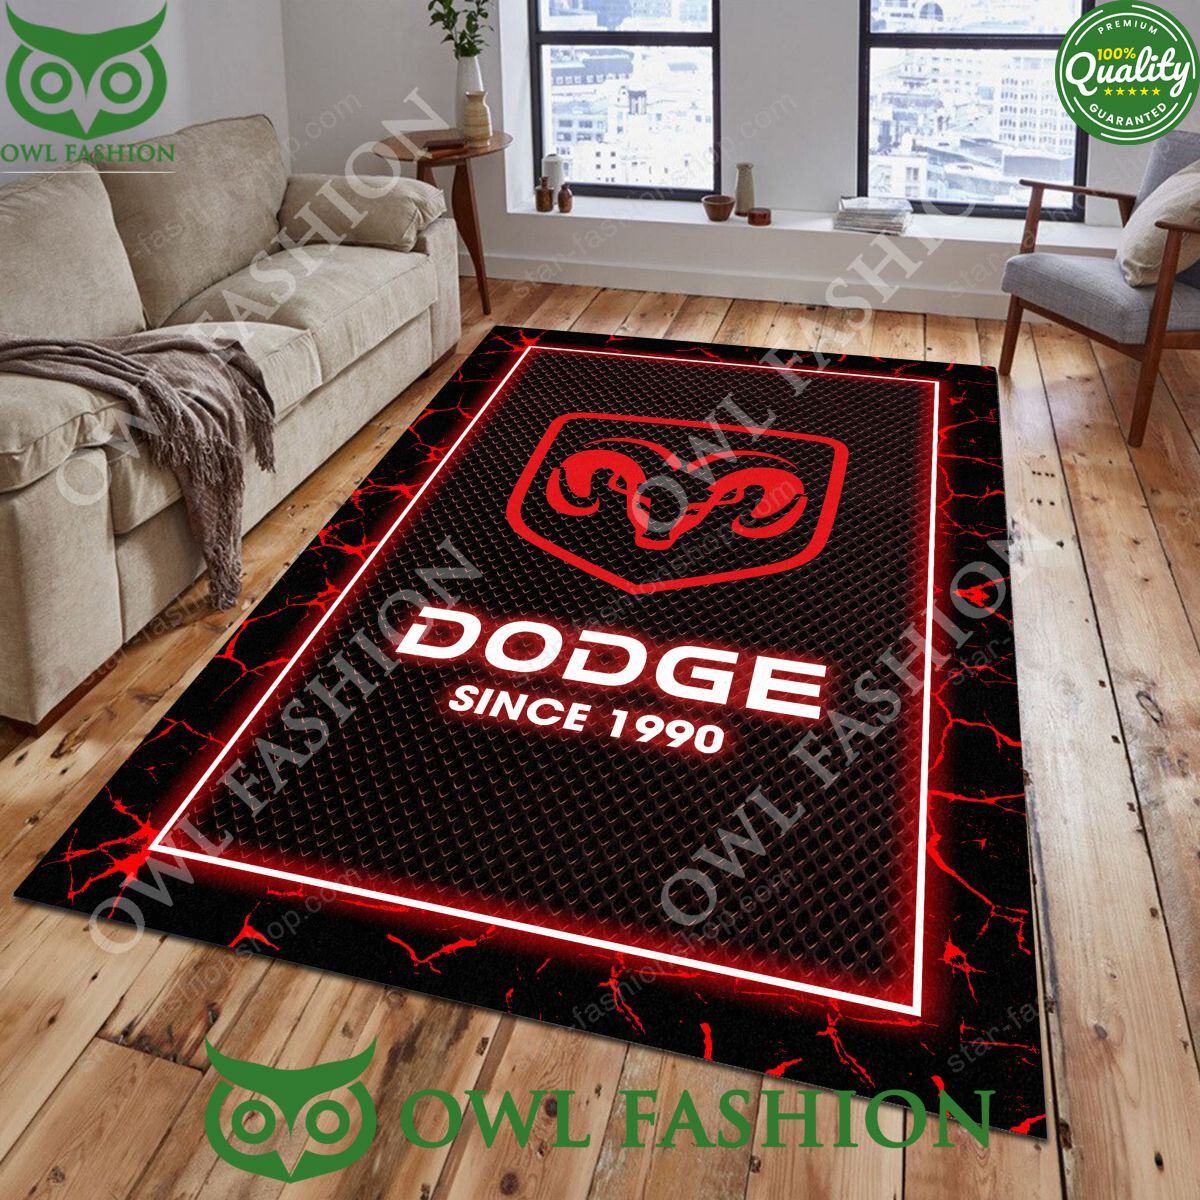 dodge full size truck rug carpet decor living room 1 ZiqT3.jpg